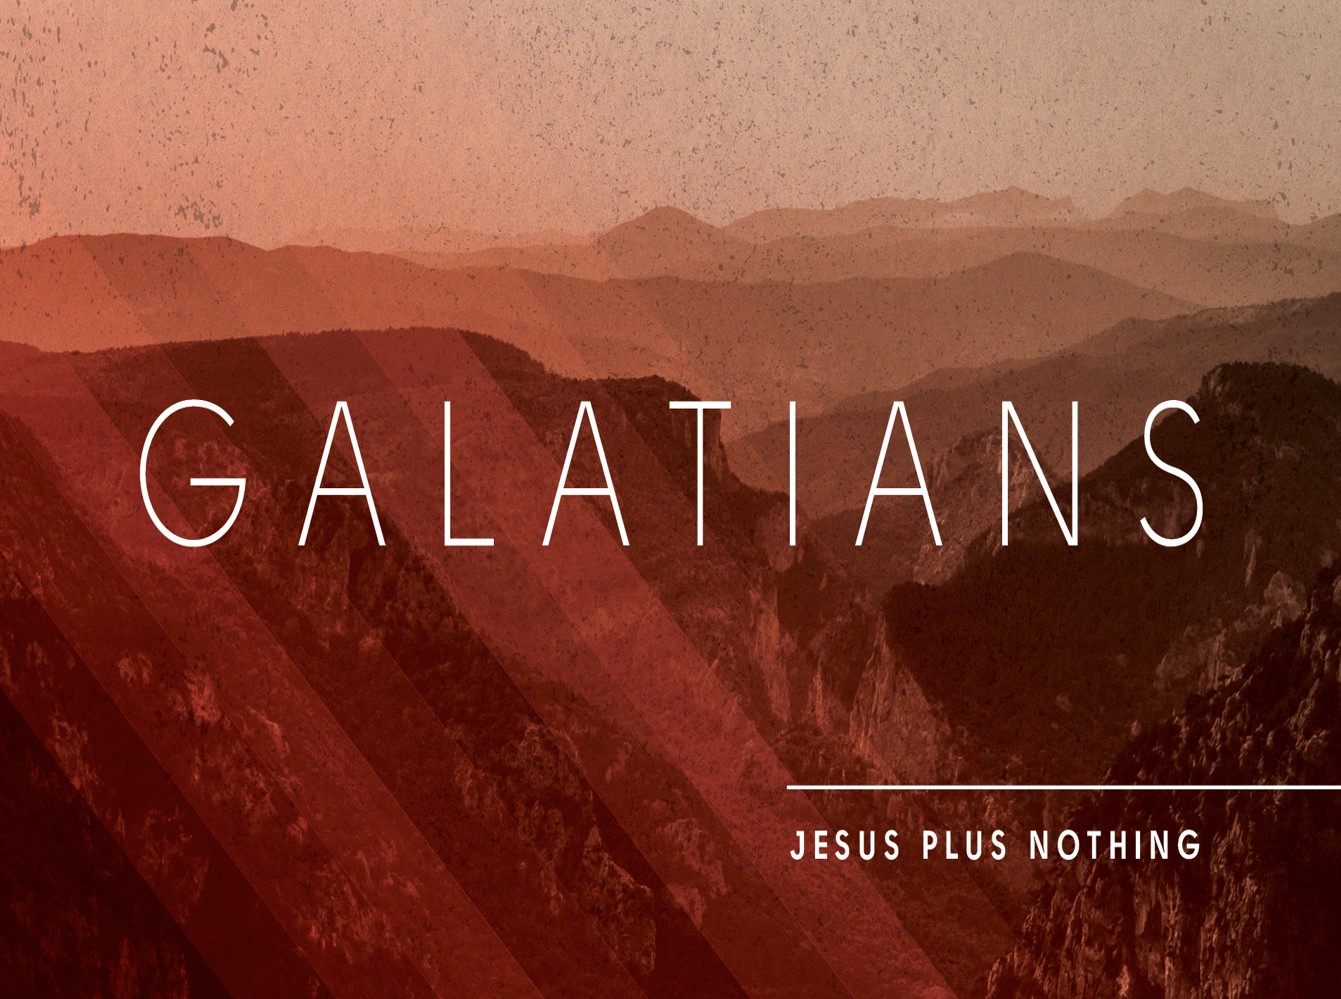 Galatians 5:16-24